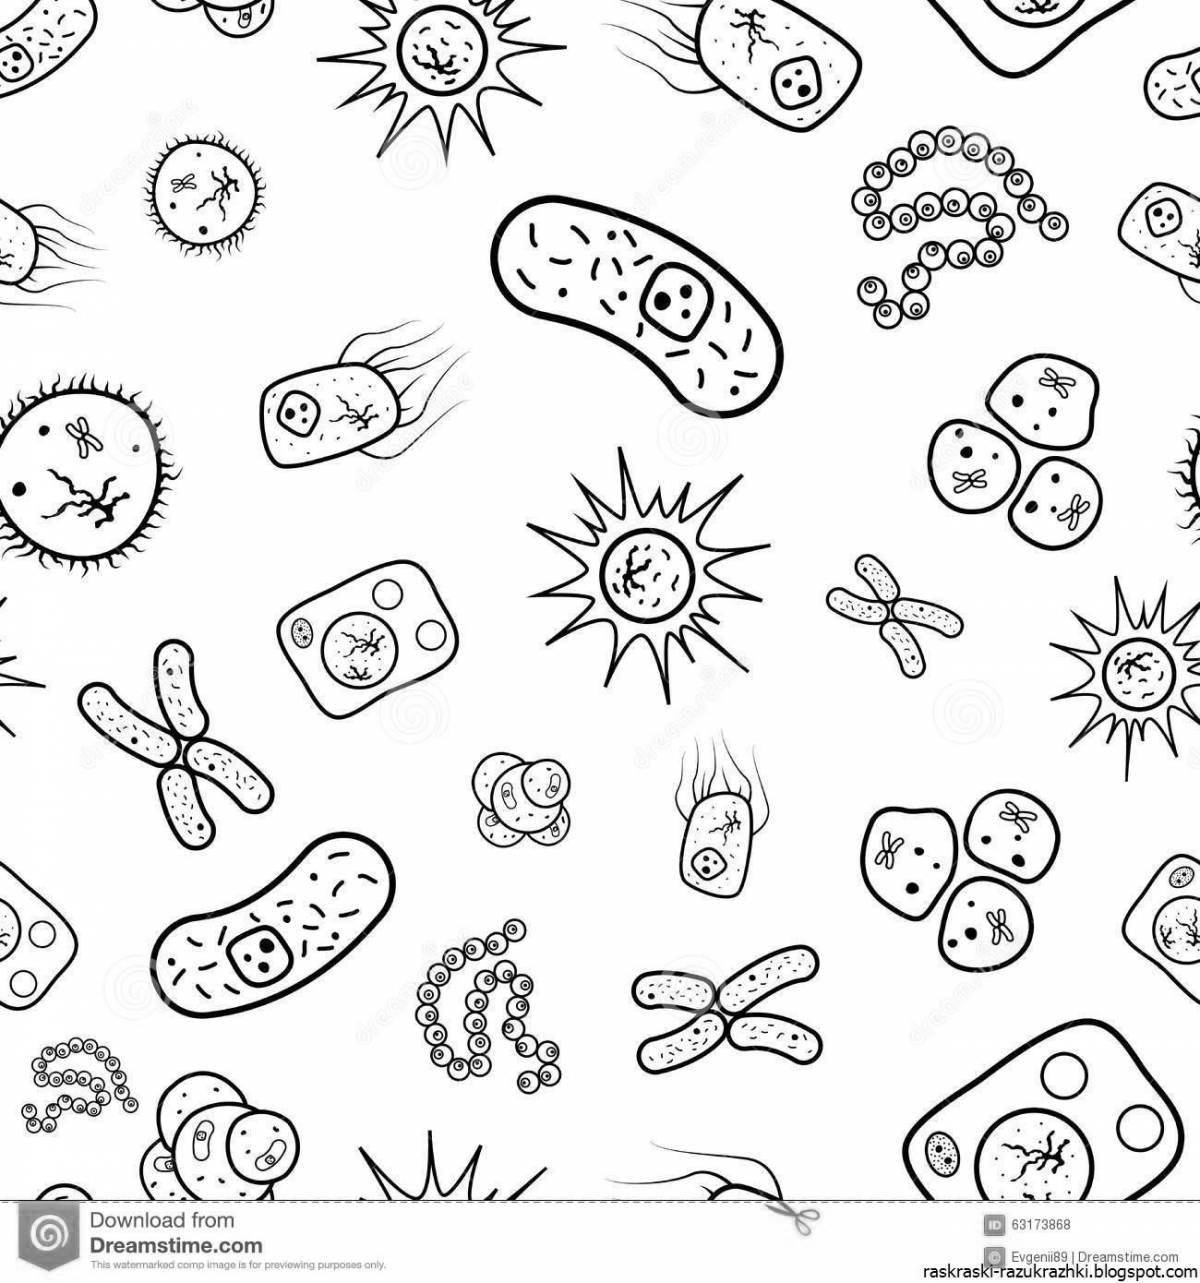 Страница раскраски с участием бактерий